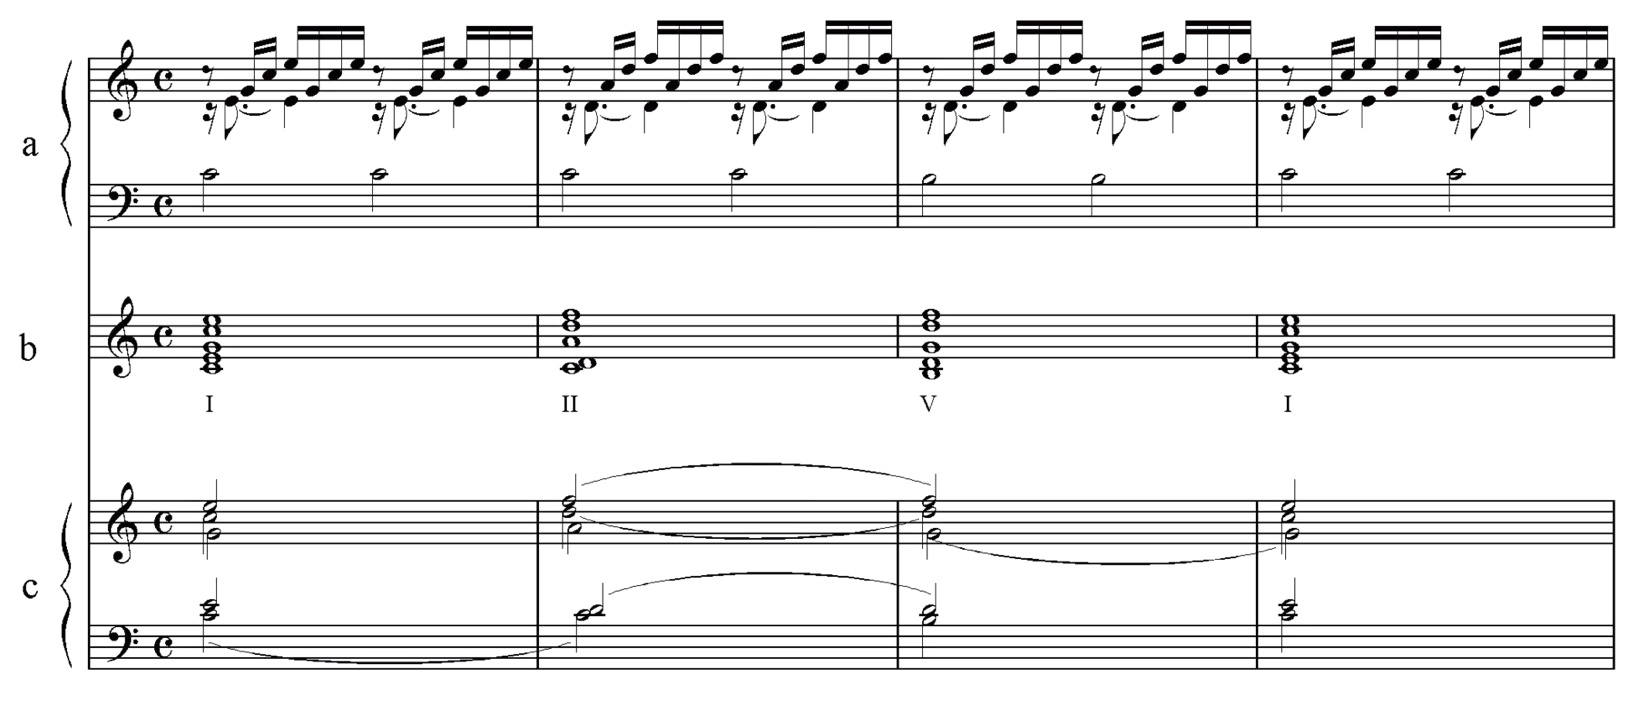 å·´å“ˆï¼šC å¤§èª¿å‰�å¥�æ›²ï¼Œä½œå“� BWV 846